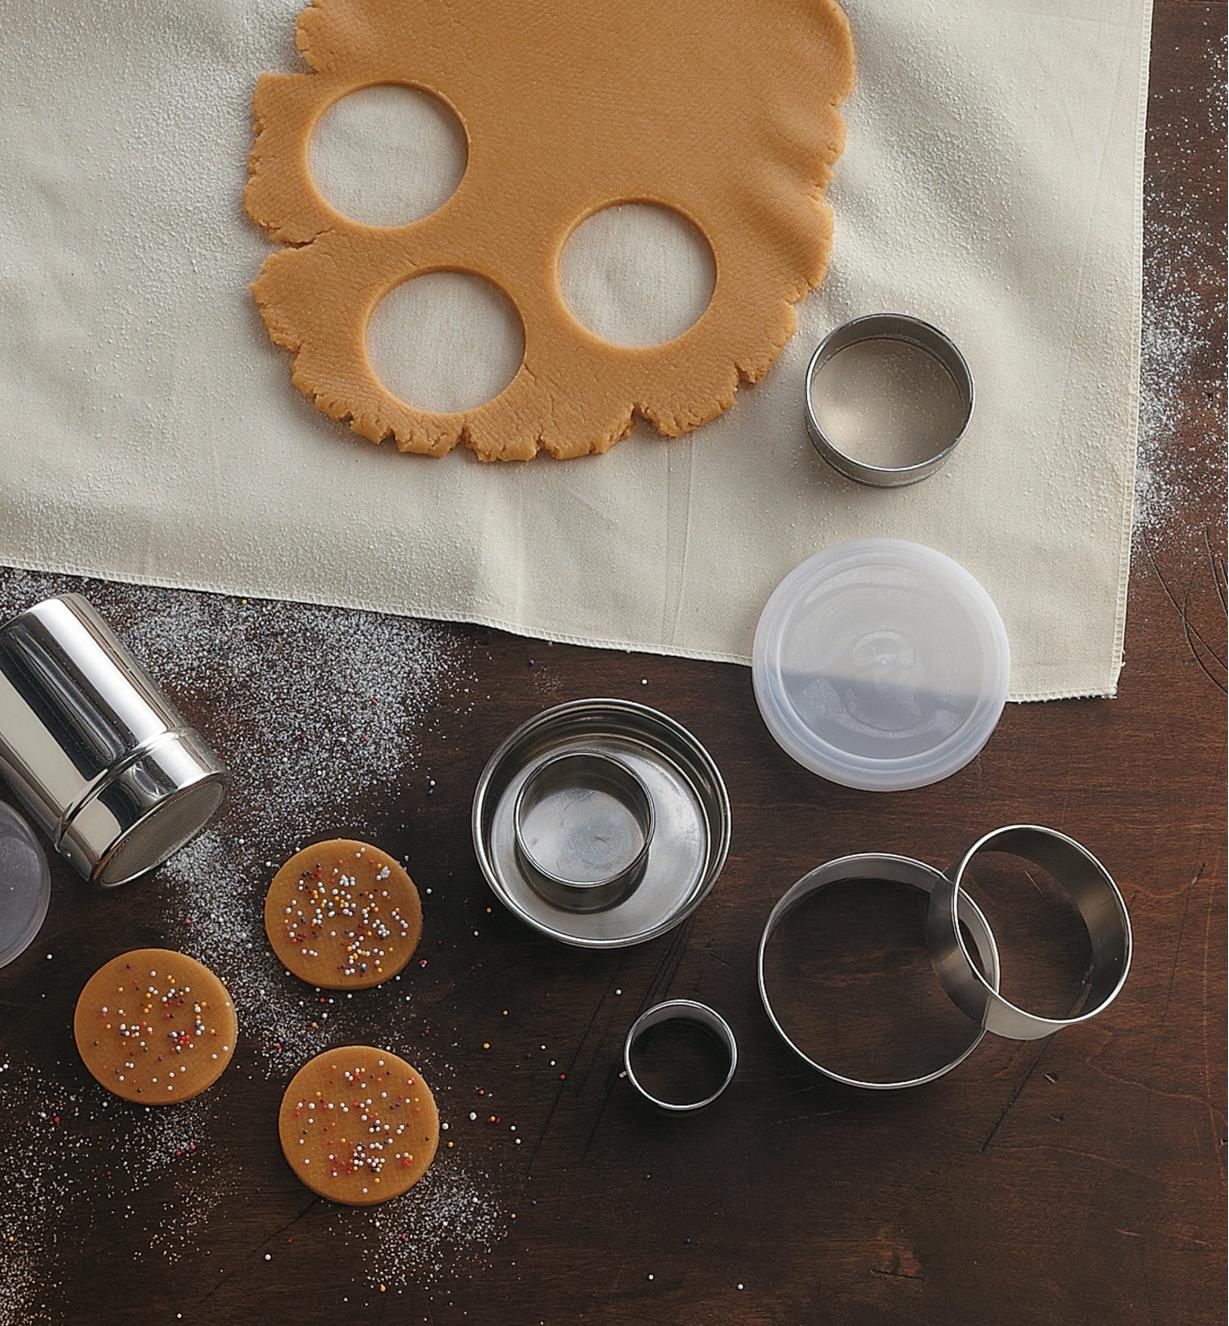 Jeux d'emporte-pièce en acier inoxydable près d'une abaisse de pâte à biscuits et de trois biscuits découpés